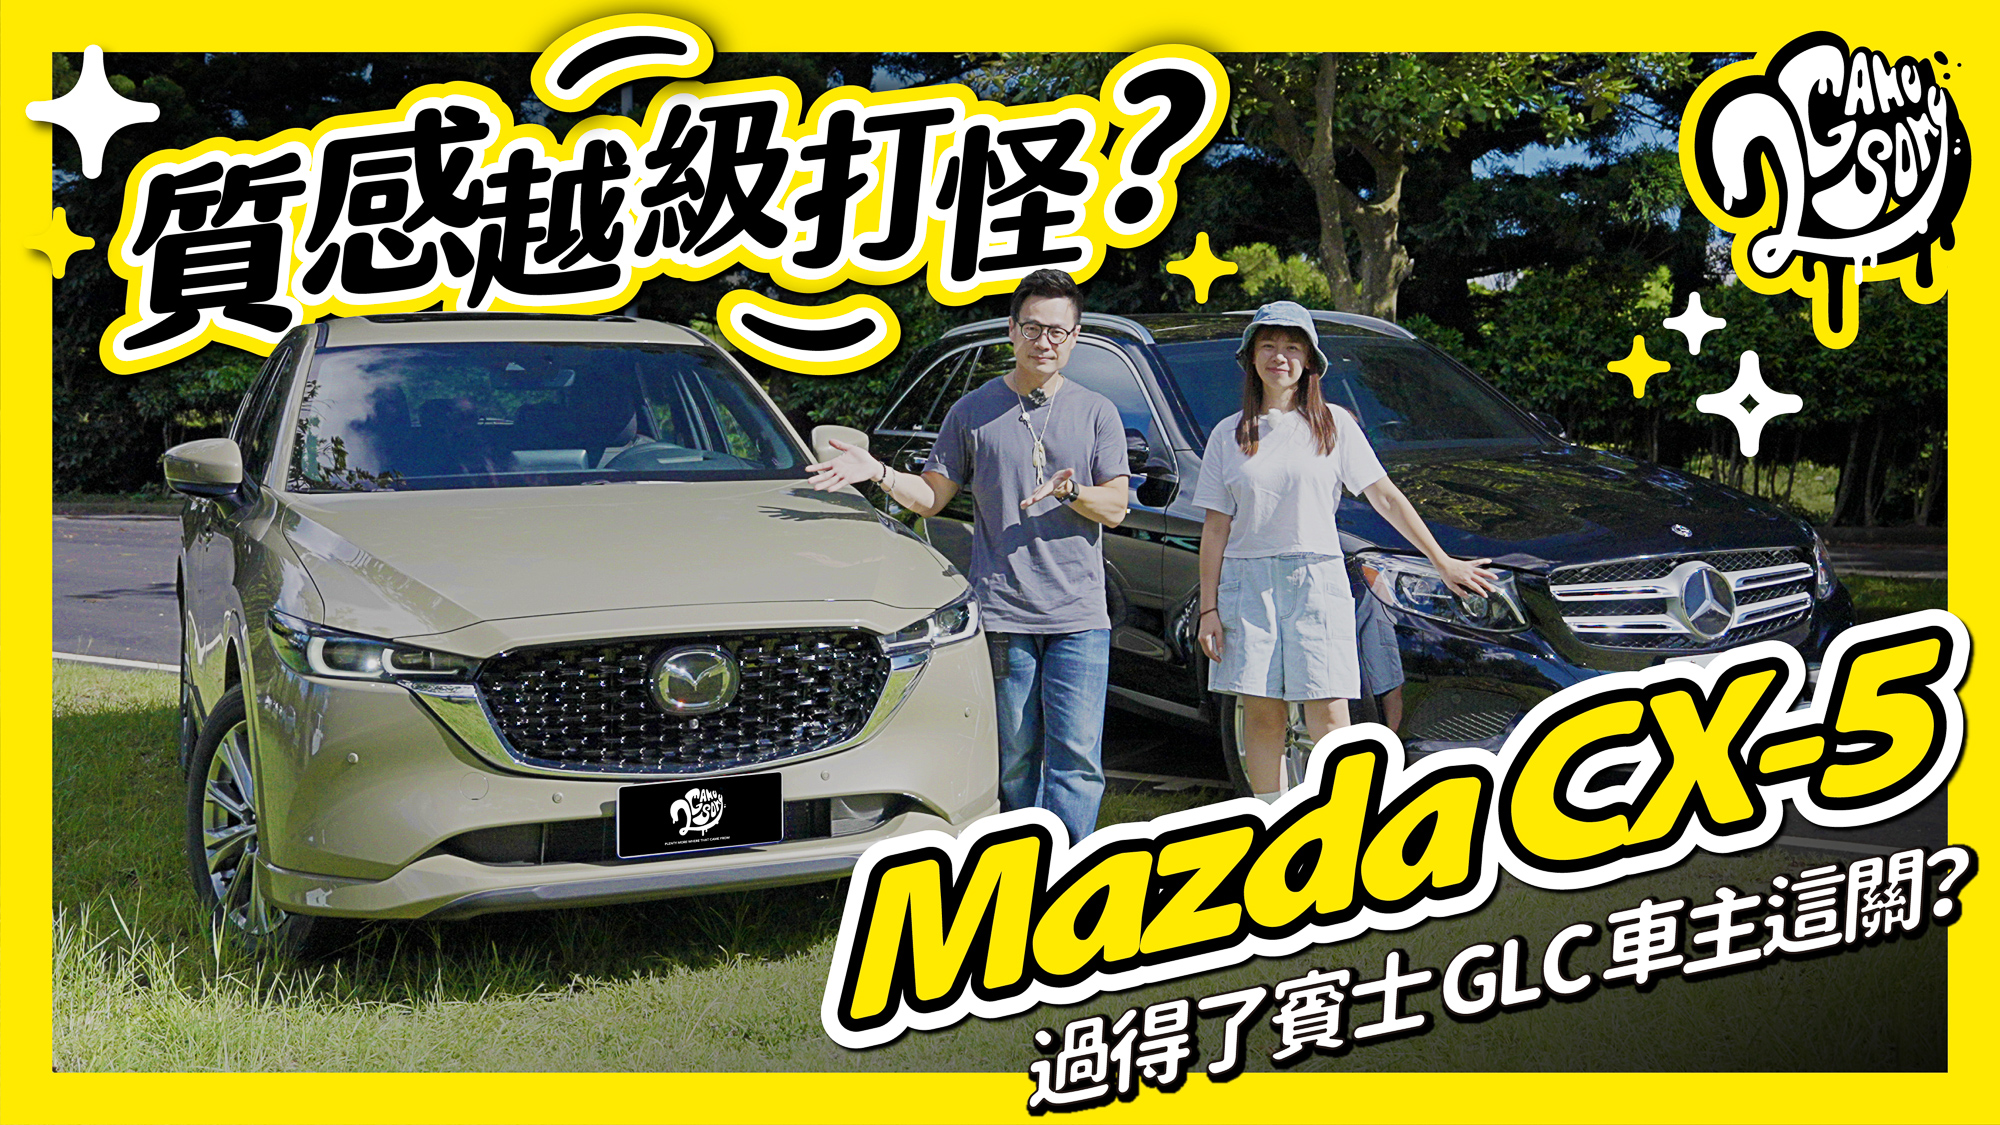 質感越級打怪？Mazda CX-5 過得了賓士 GLC 車主這關？